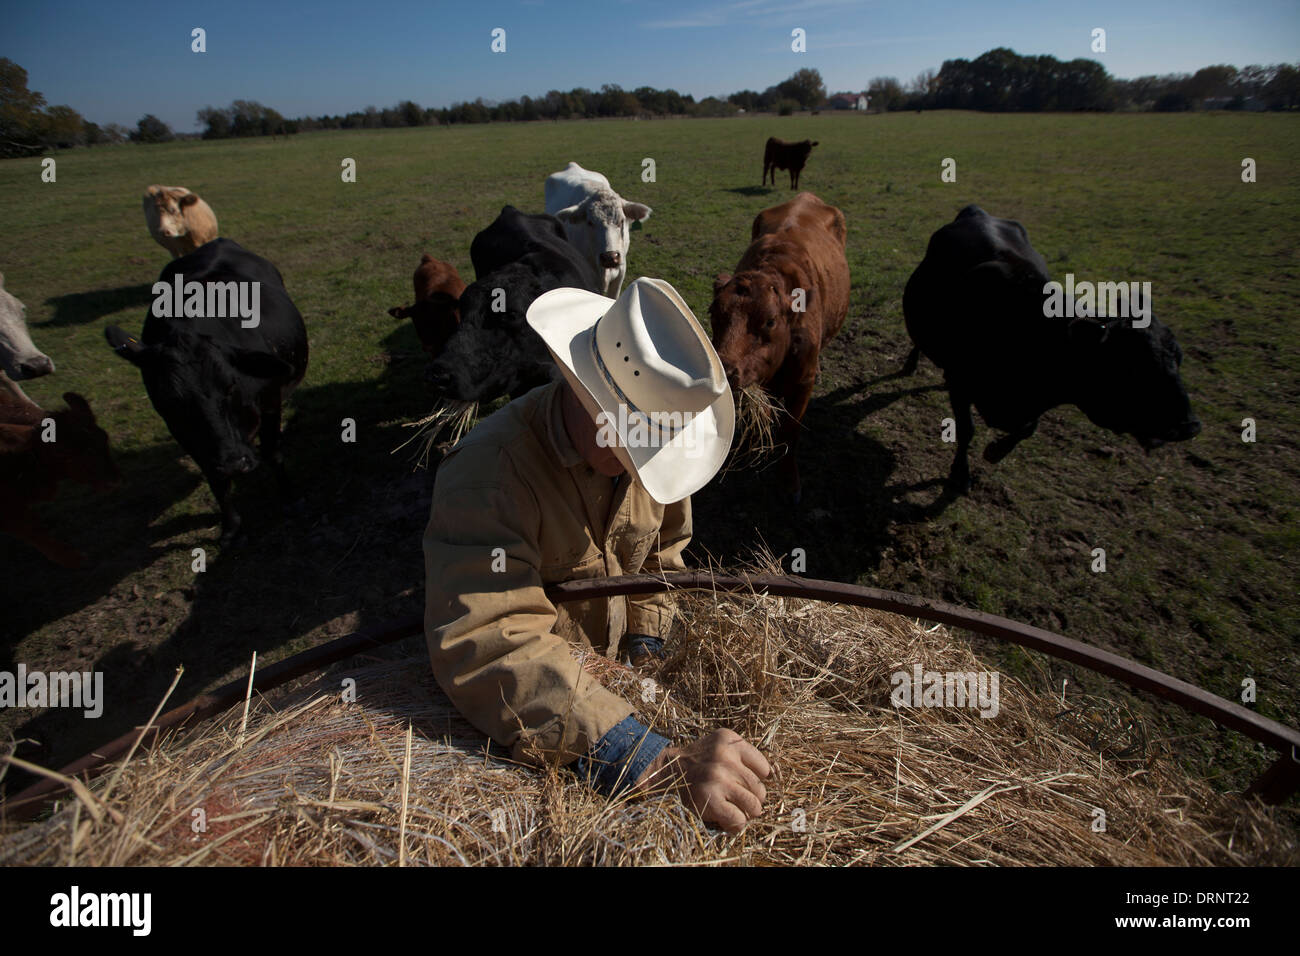 Un éleveur de bétail donne de la nourriture à ses vaches dans Waxahachie, Texas, United States, 29 novembre 2013. Banque D'Images